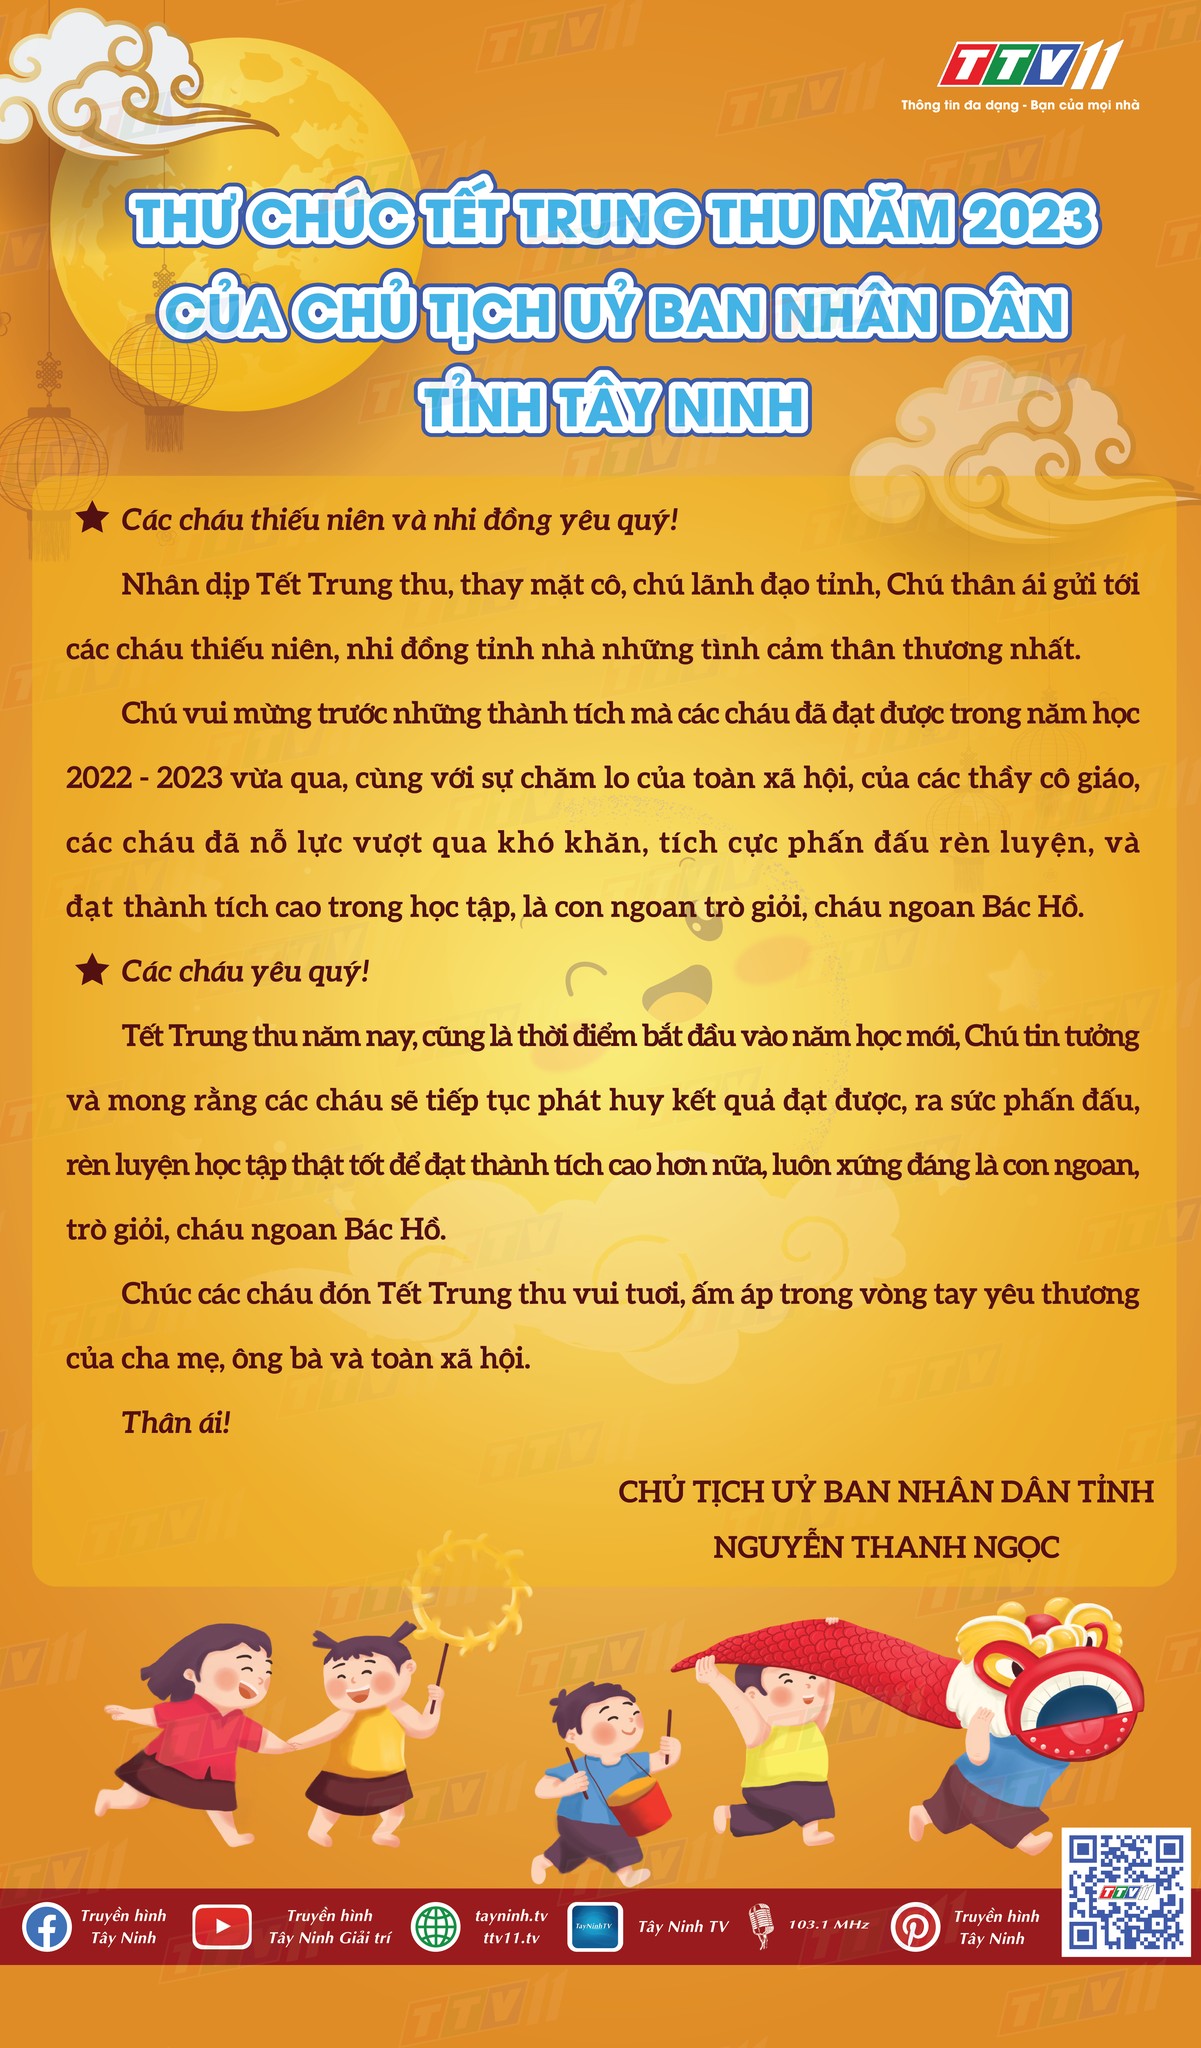 Chủ tịch Uỷ ban nhân dân tỉnh Tây Ninh Nguyễn Thanh Ngọc gửi thư chúc Tết Trung thu năm 2023 đến toàn thể các cháu thiếu niên và nhi đồng trên địa bàn tỉnh Tây Ninh